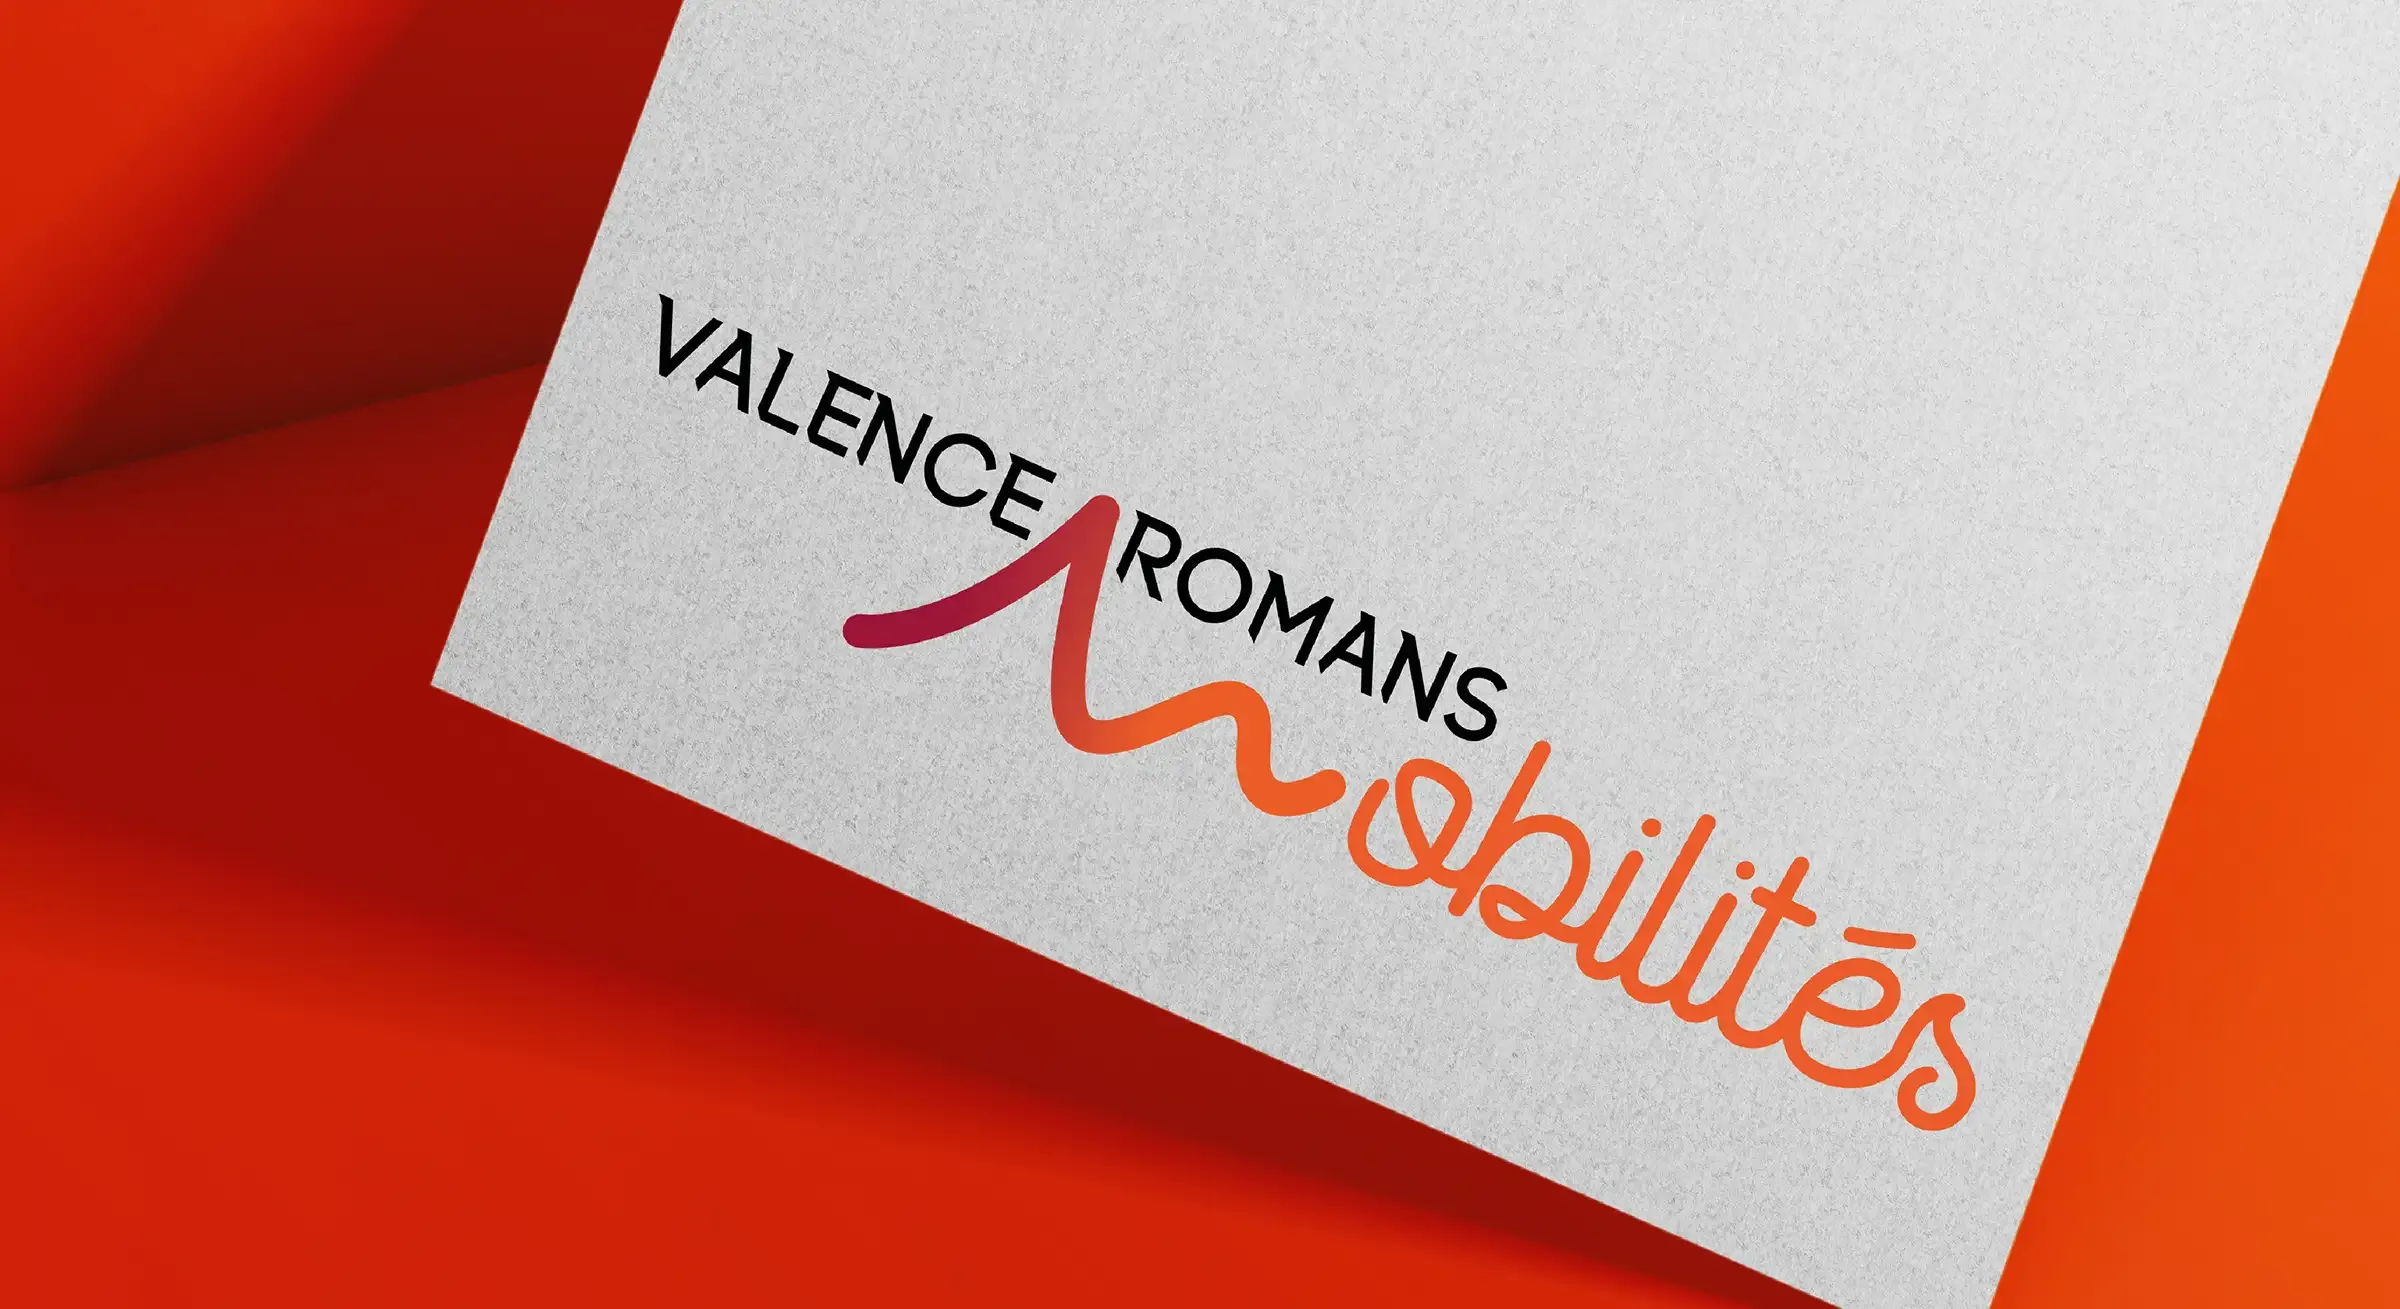 Valence Romans Mobilité